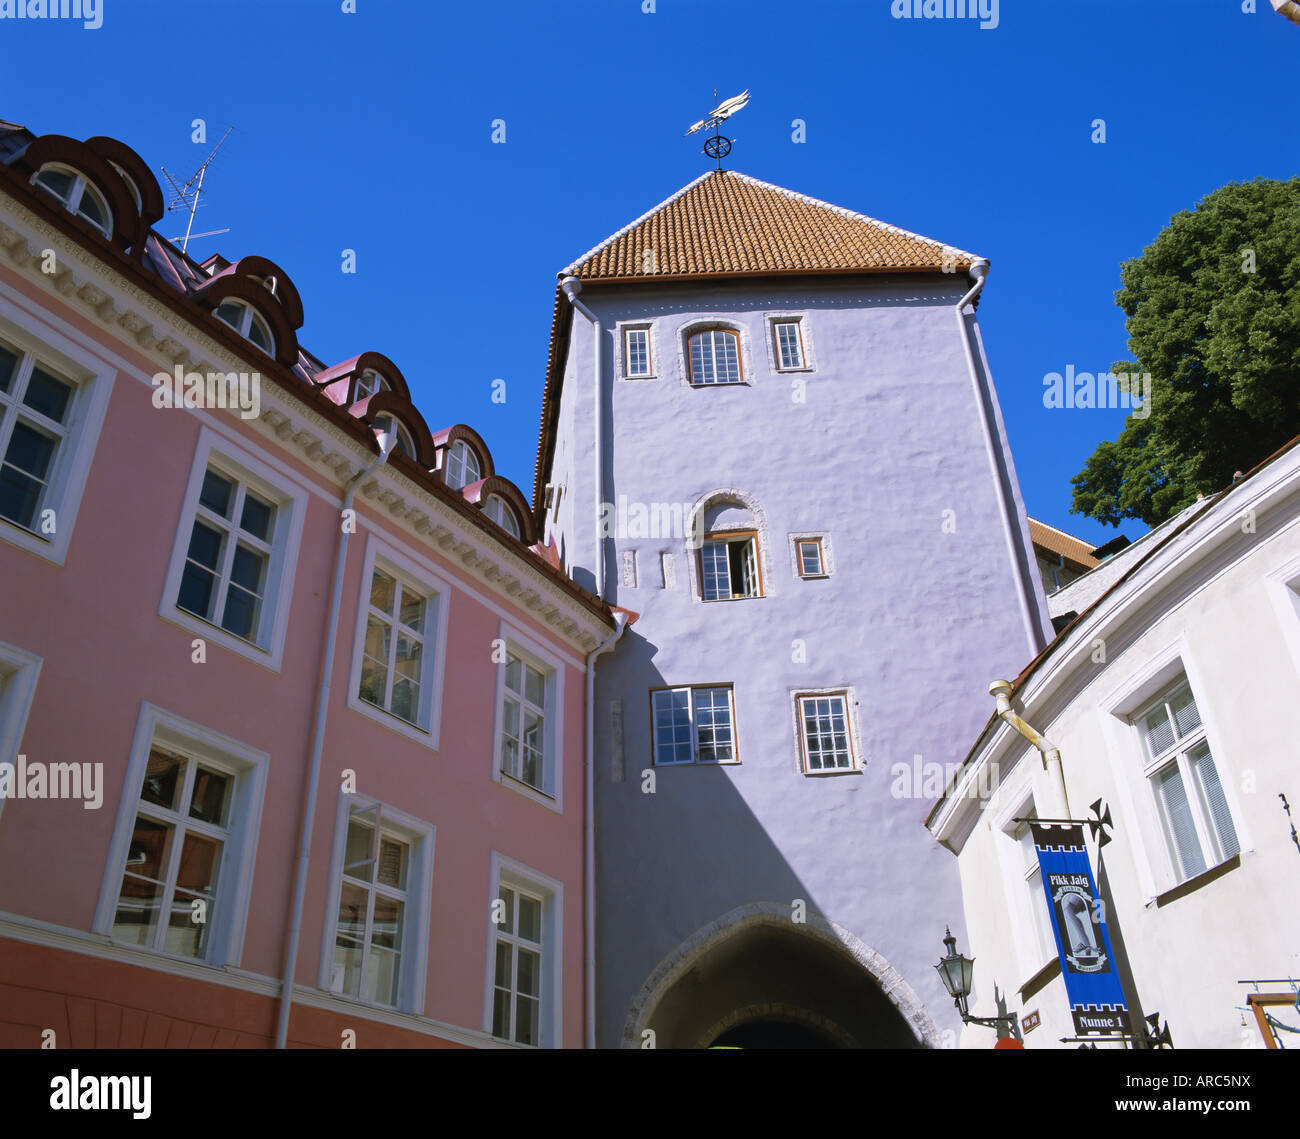 Vieille Ville, site du patrimoine mondial de l'UNESCO, Tallinn, Estonie, pays Baltes, Europe Banque D'Images